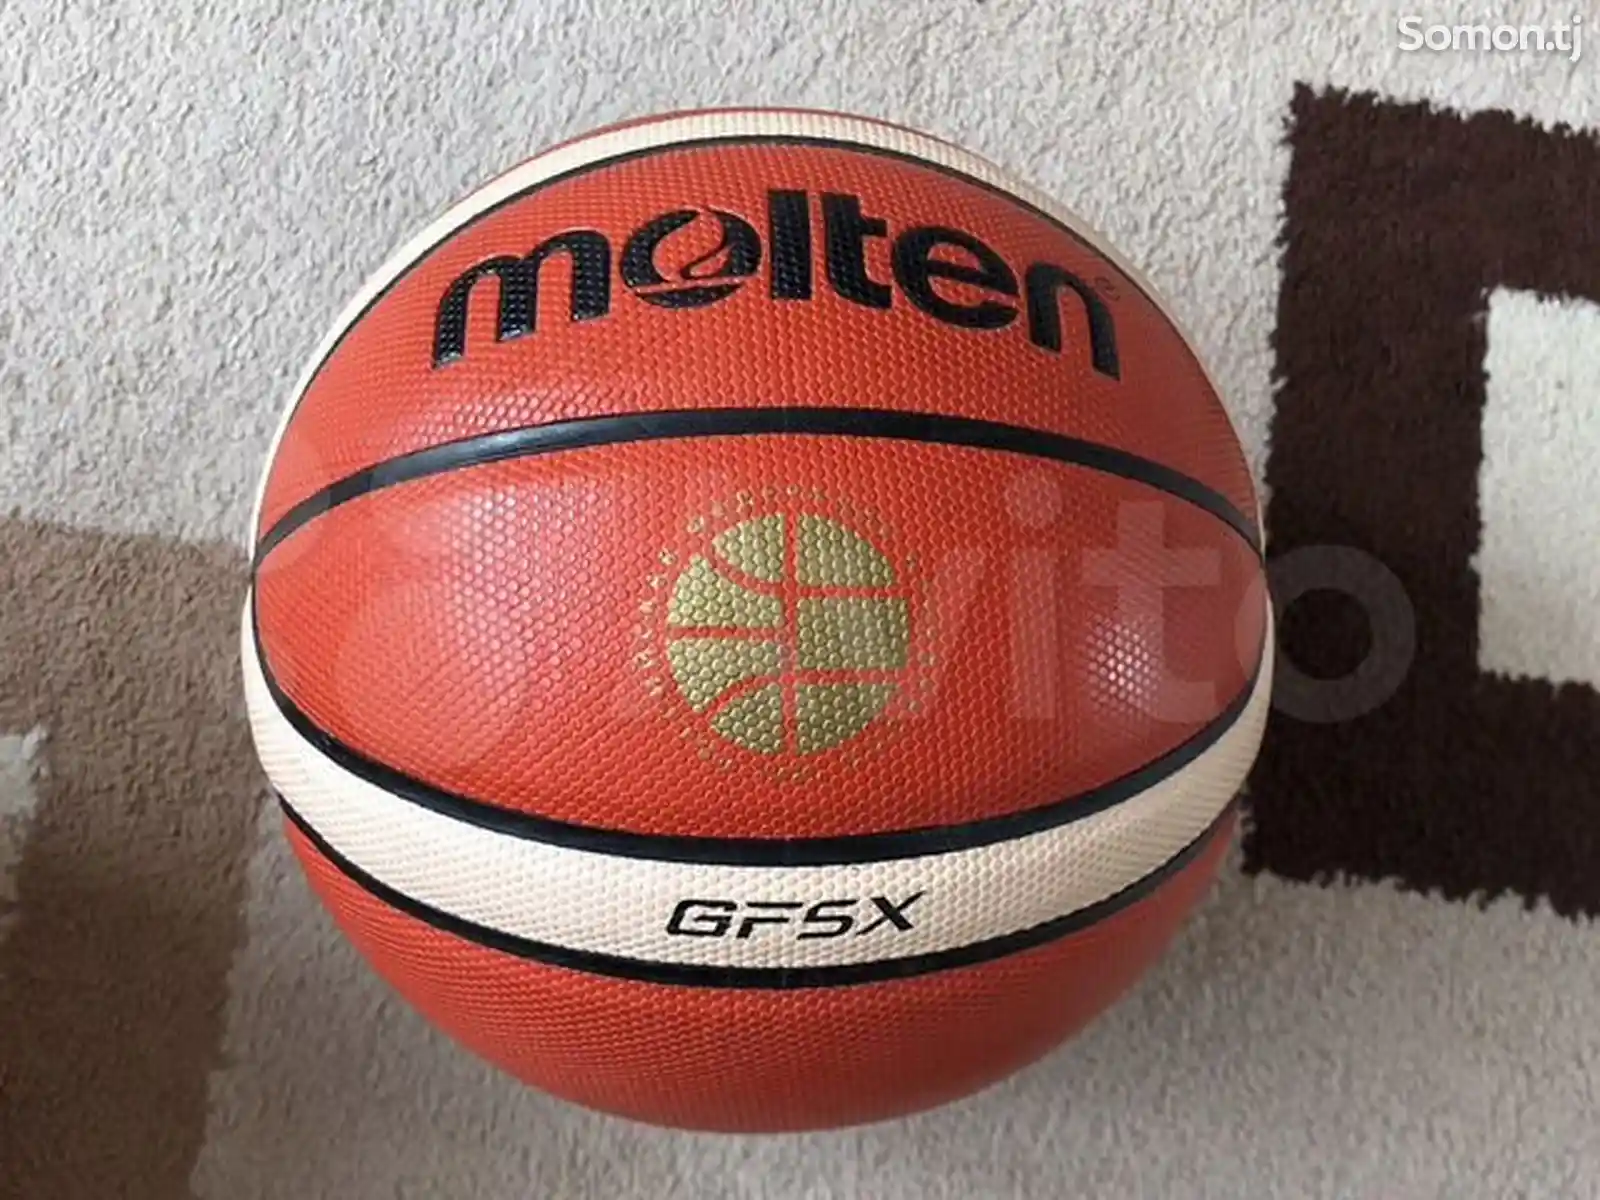 Баскетбольный мяч Molten-4